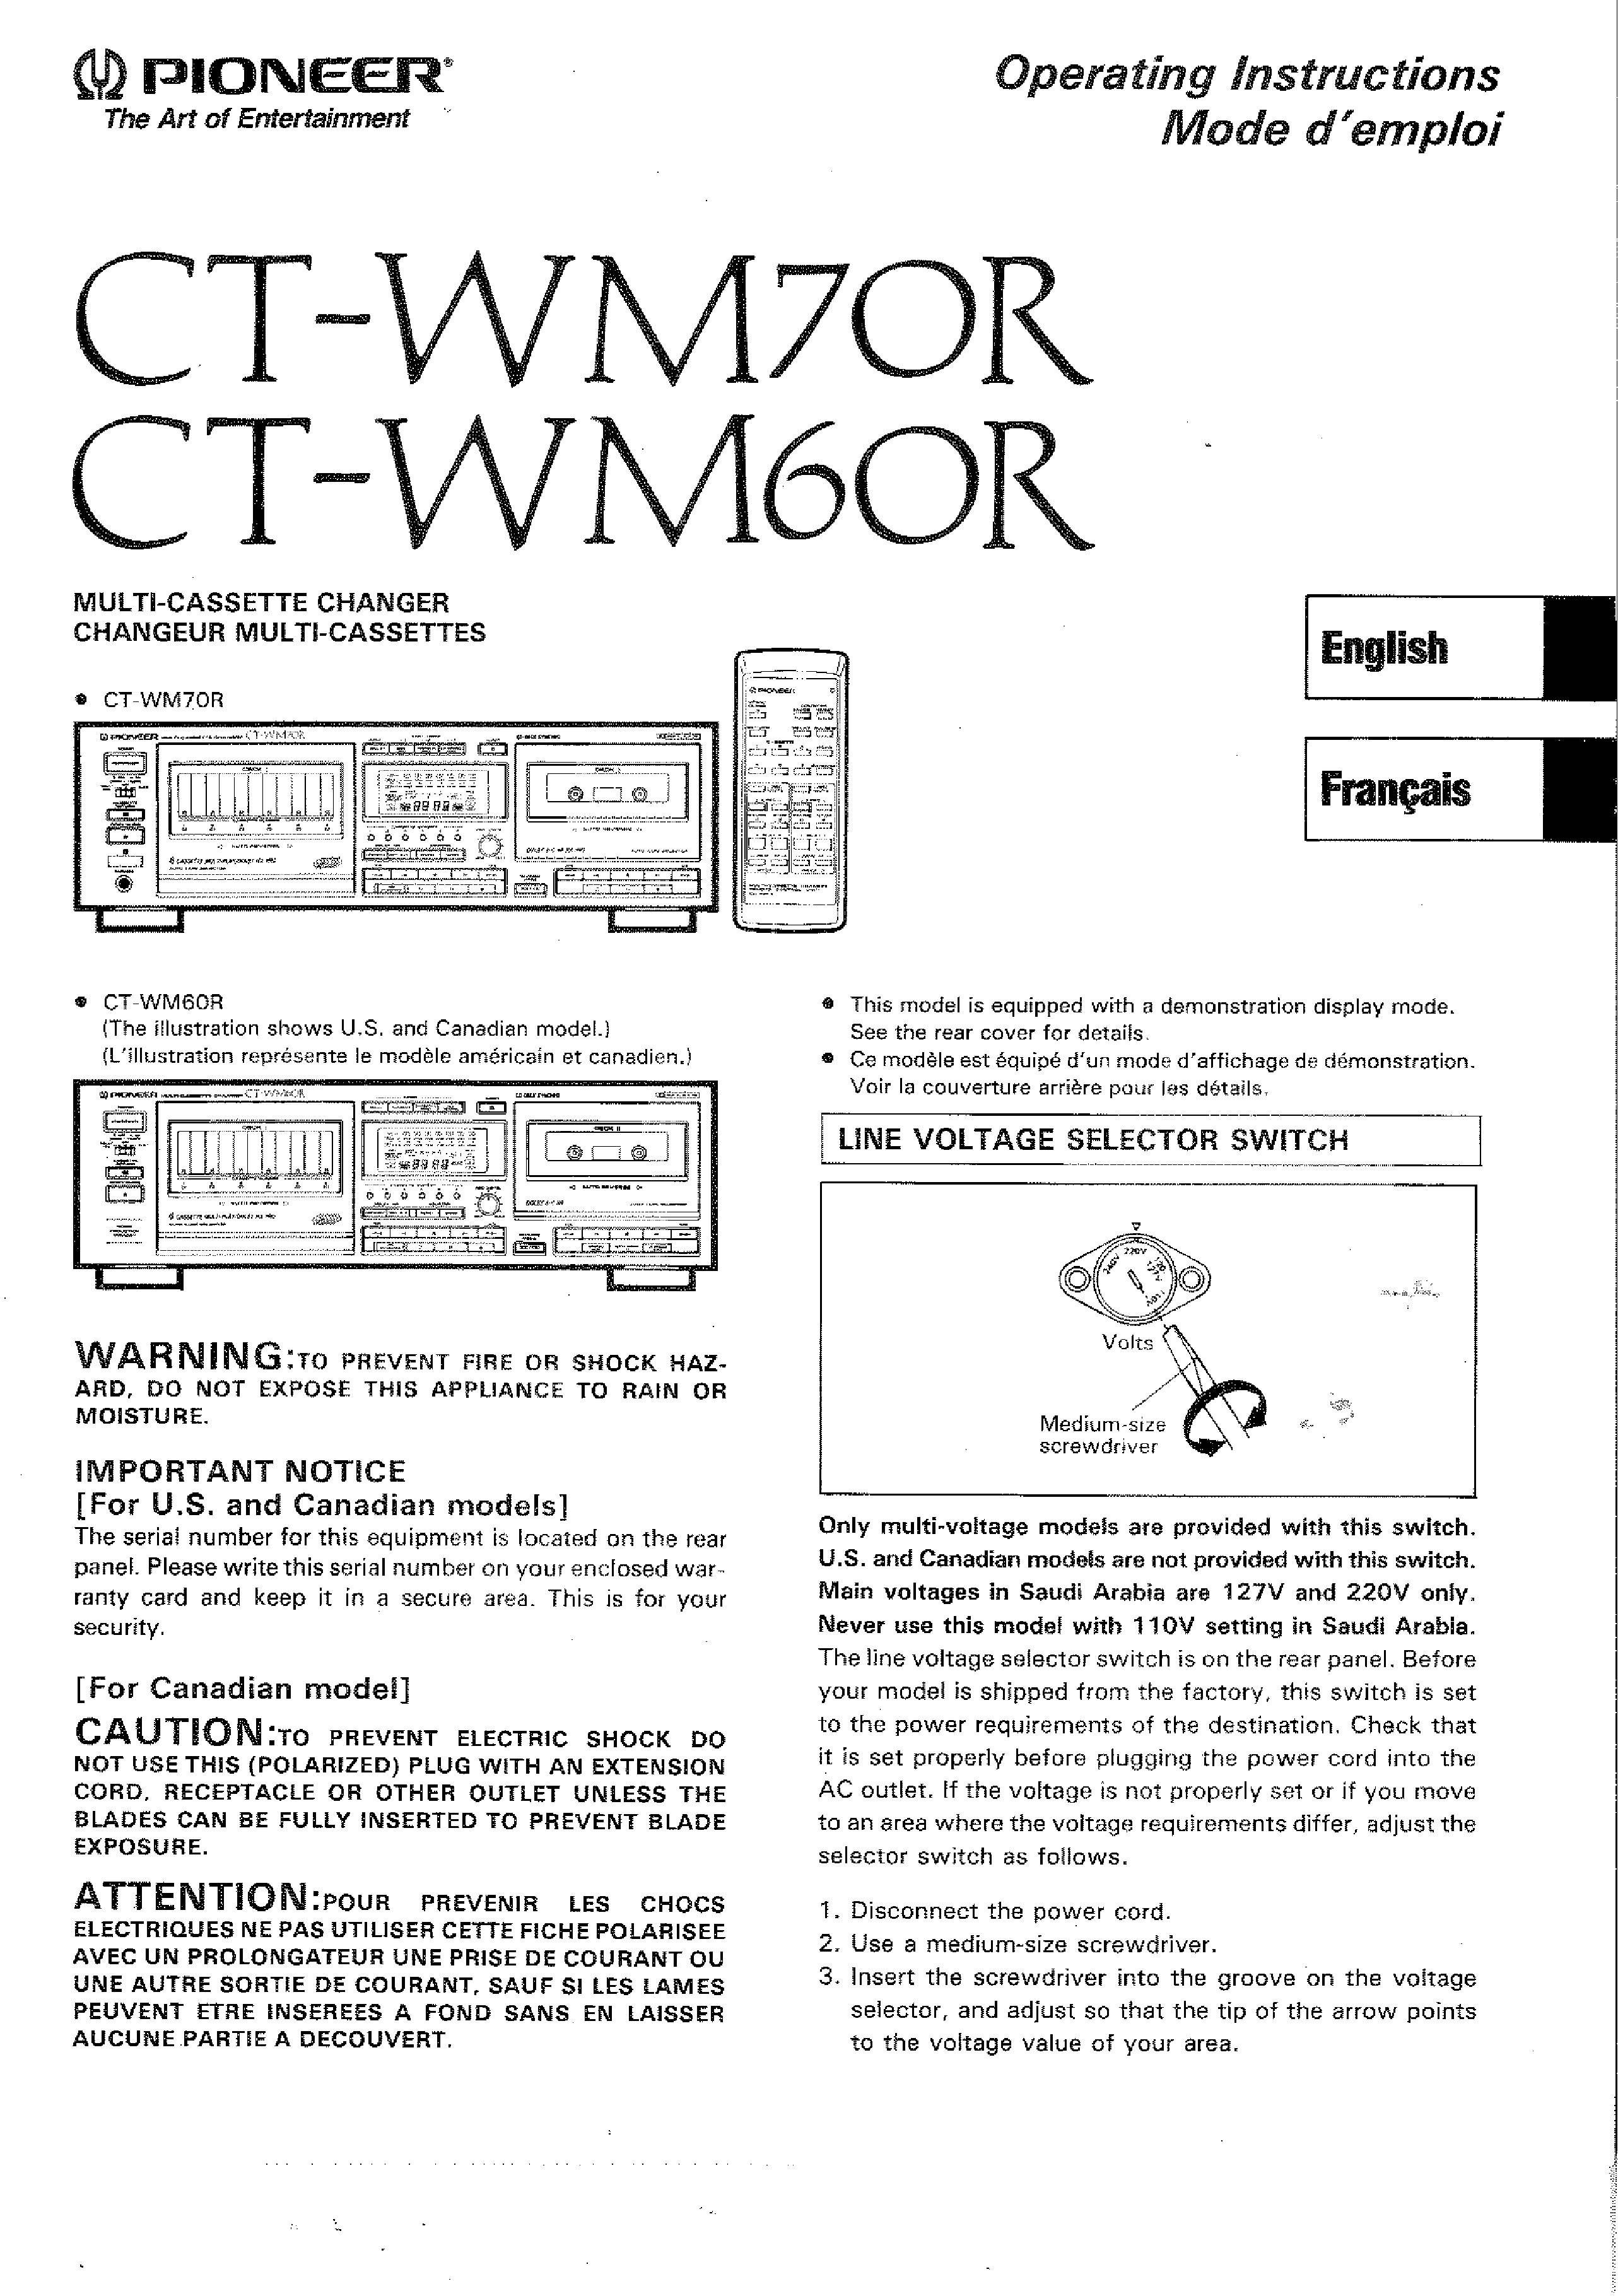 Pioneer CT-WM70R